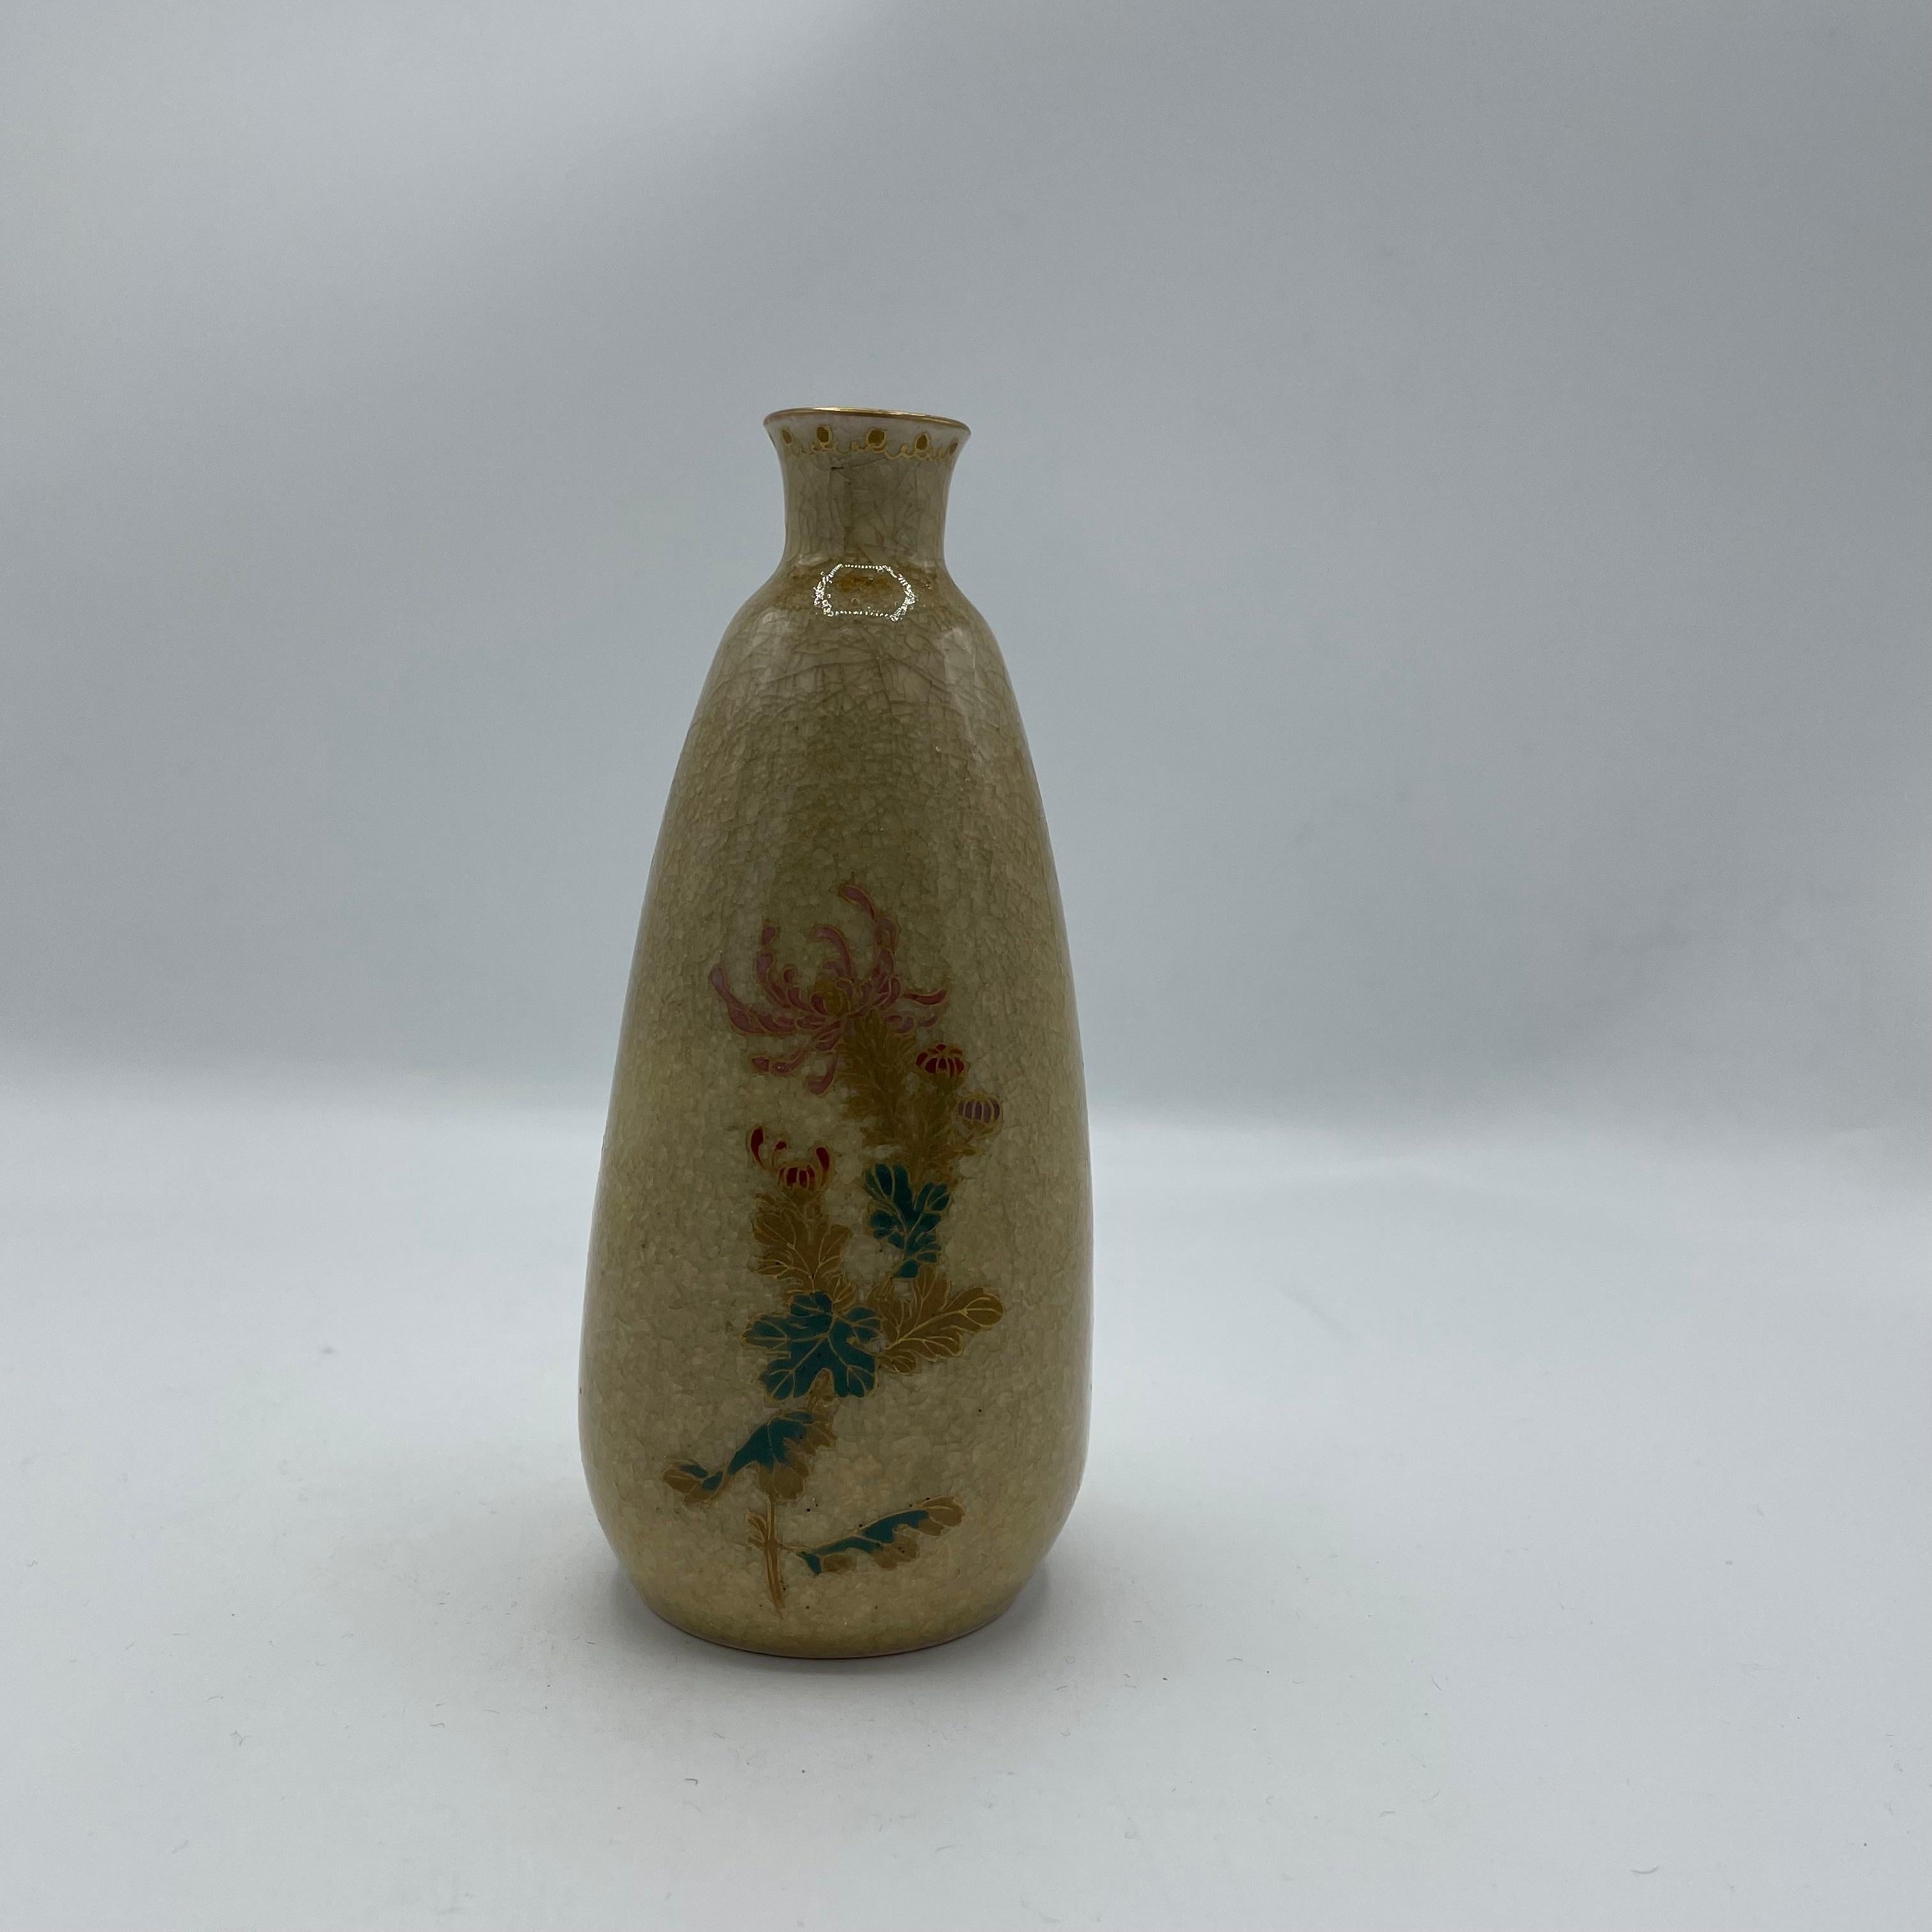 Dies ist eine Sake-Flasche, die wir auf Japanisch 'Tokkuri' nennen.
Dieser wird beim Servieren von Sake verwendet. Sie ist aus Porzellan und wurde in den 1960er Jahren in der Showa-Ära hergestellt.
Auf der Oberfläche befindet sich ein